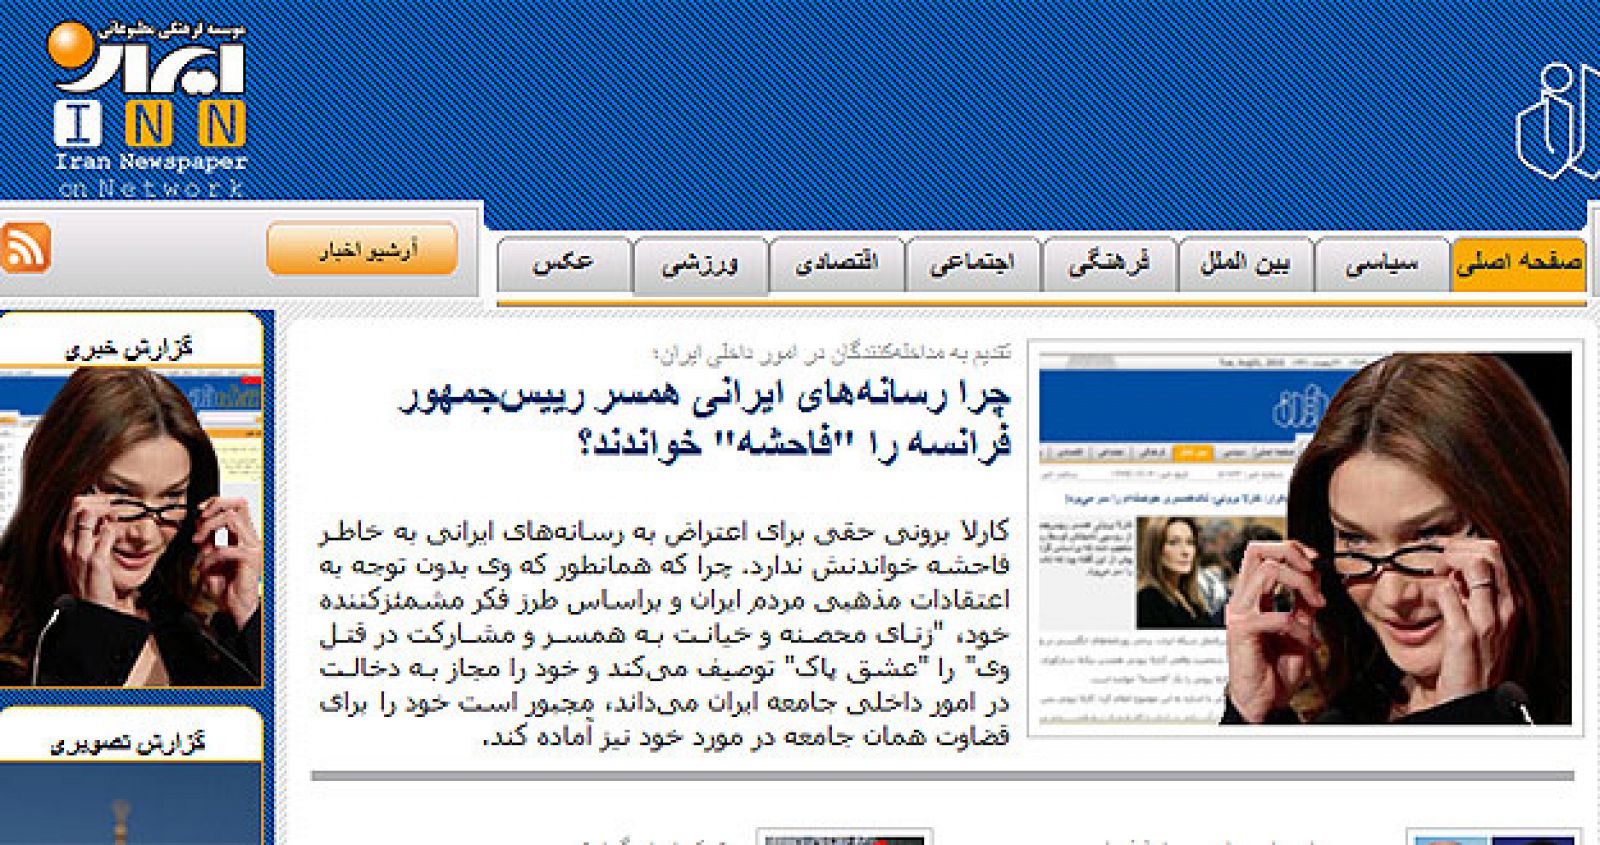 La página web del diario iraní Inn ha vuelto a insistir en que Carla Bruni se merece el título de "prostituta".